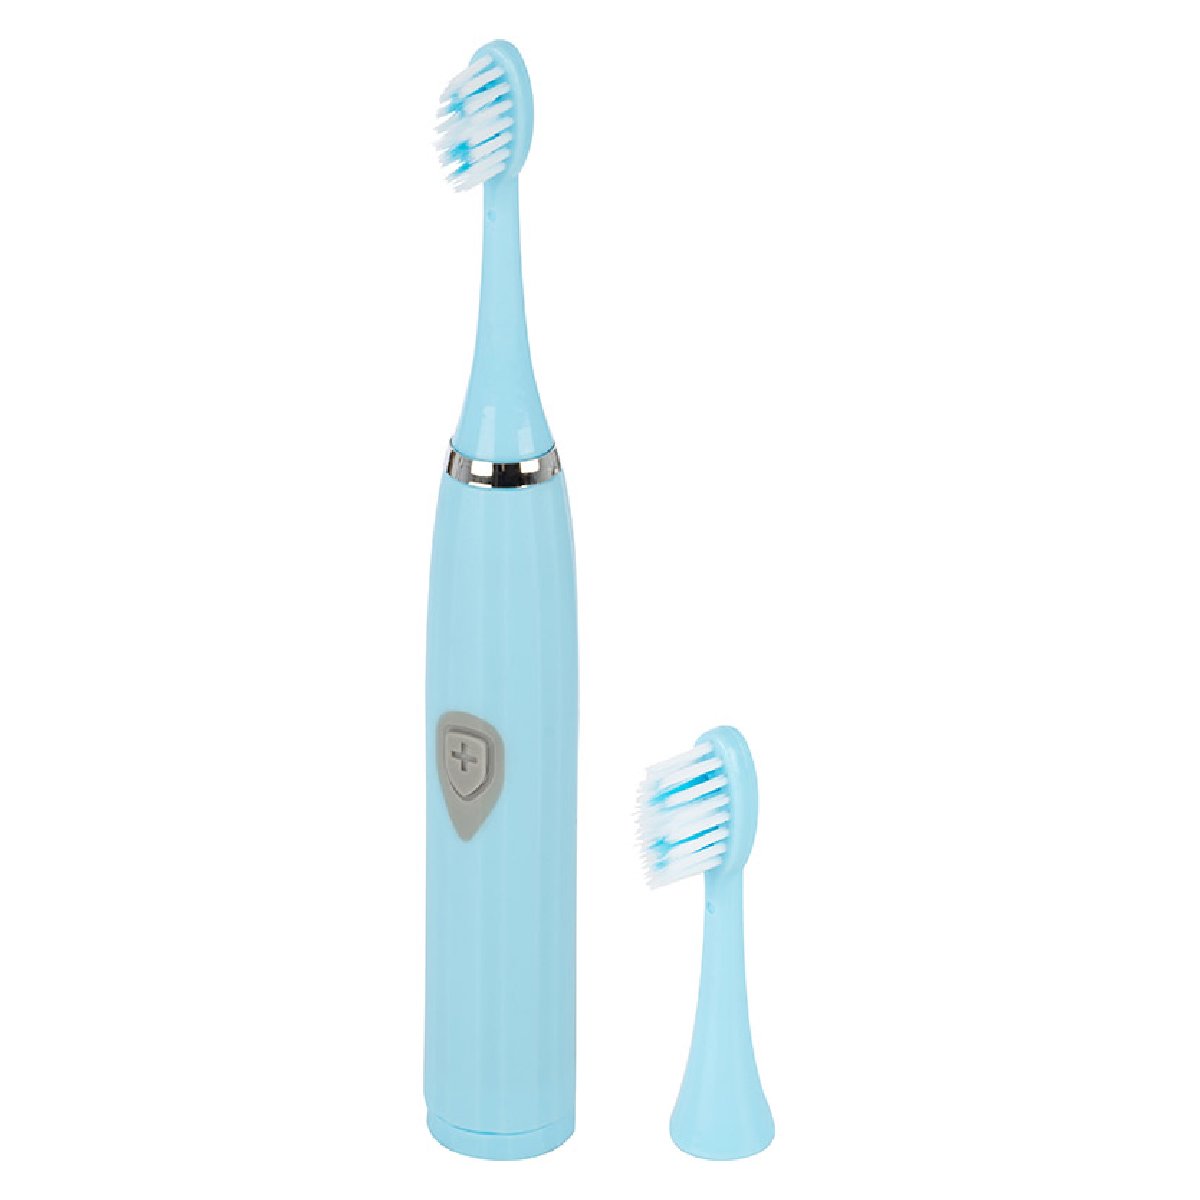 Зубная щетка HomeStar HS-6004 с доп. насадкой, голубая (103589)Купить